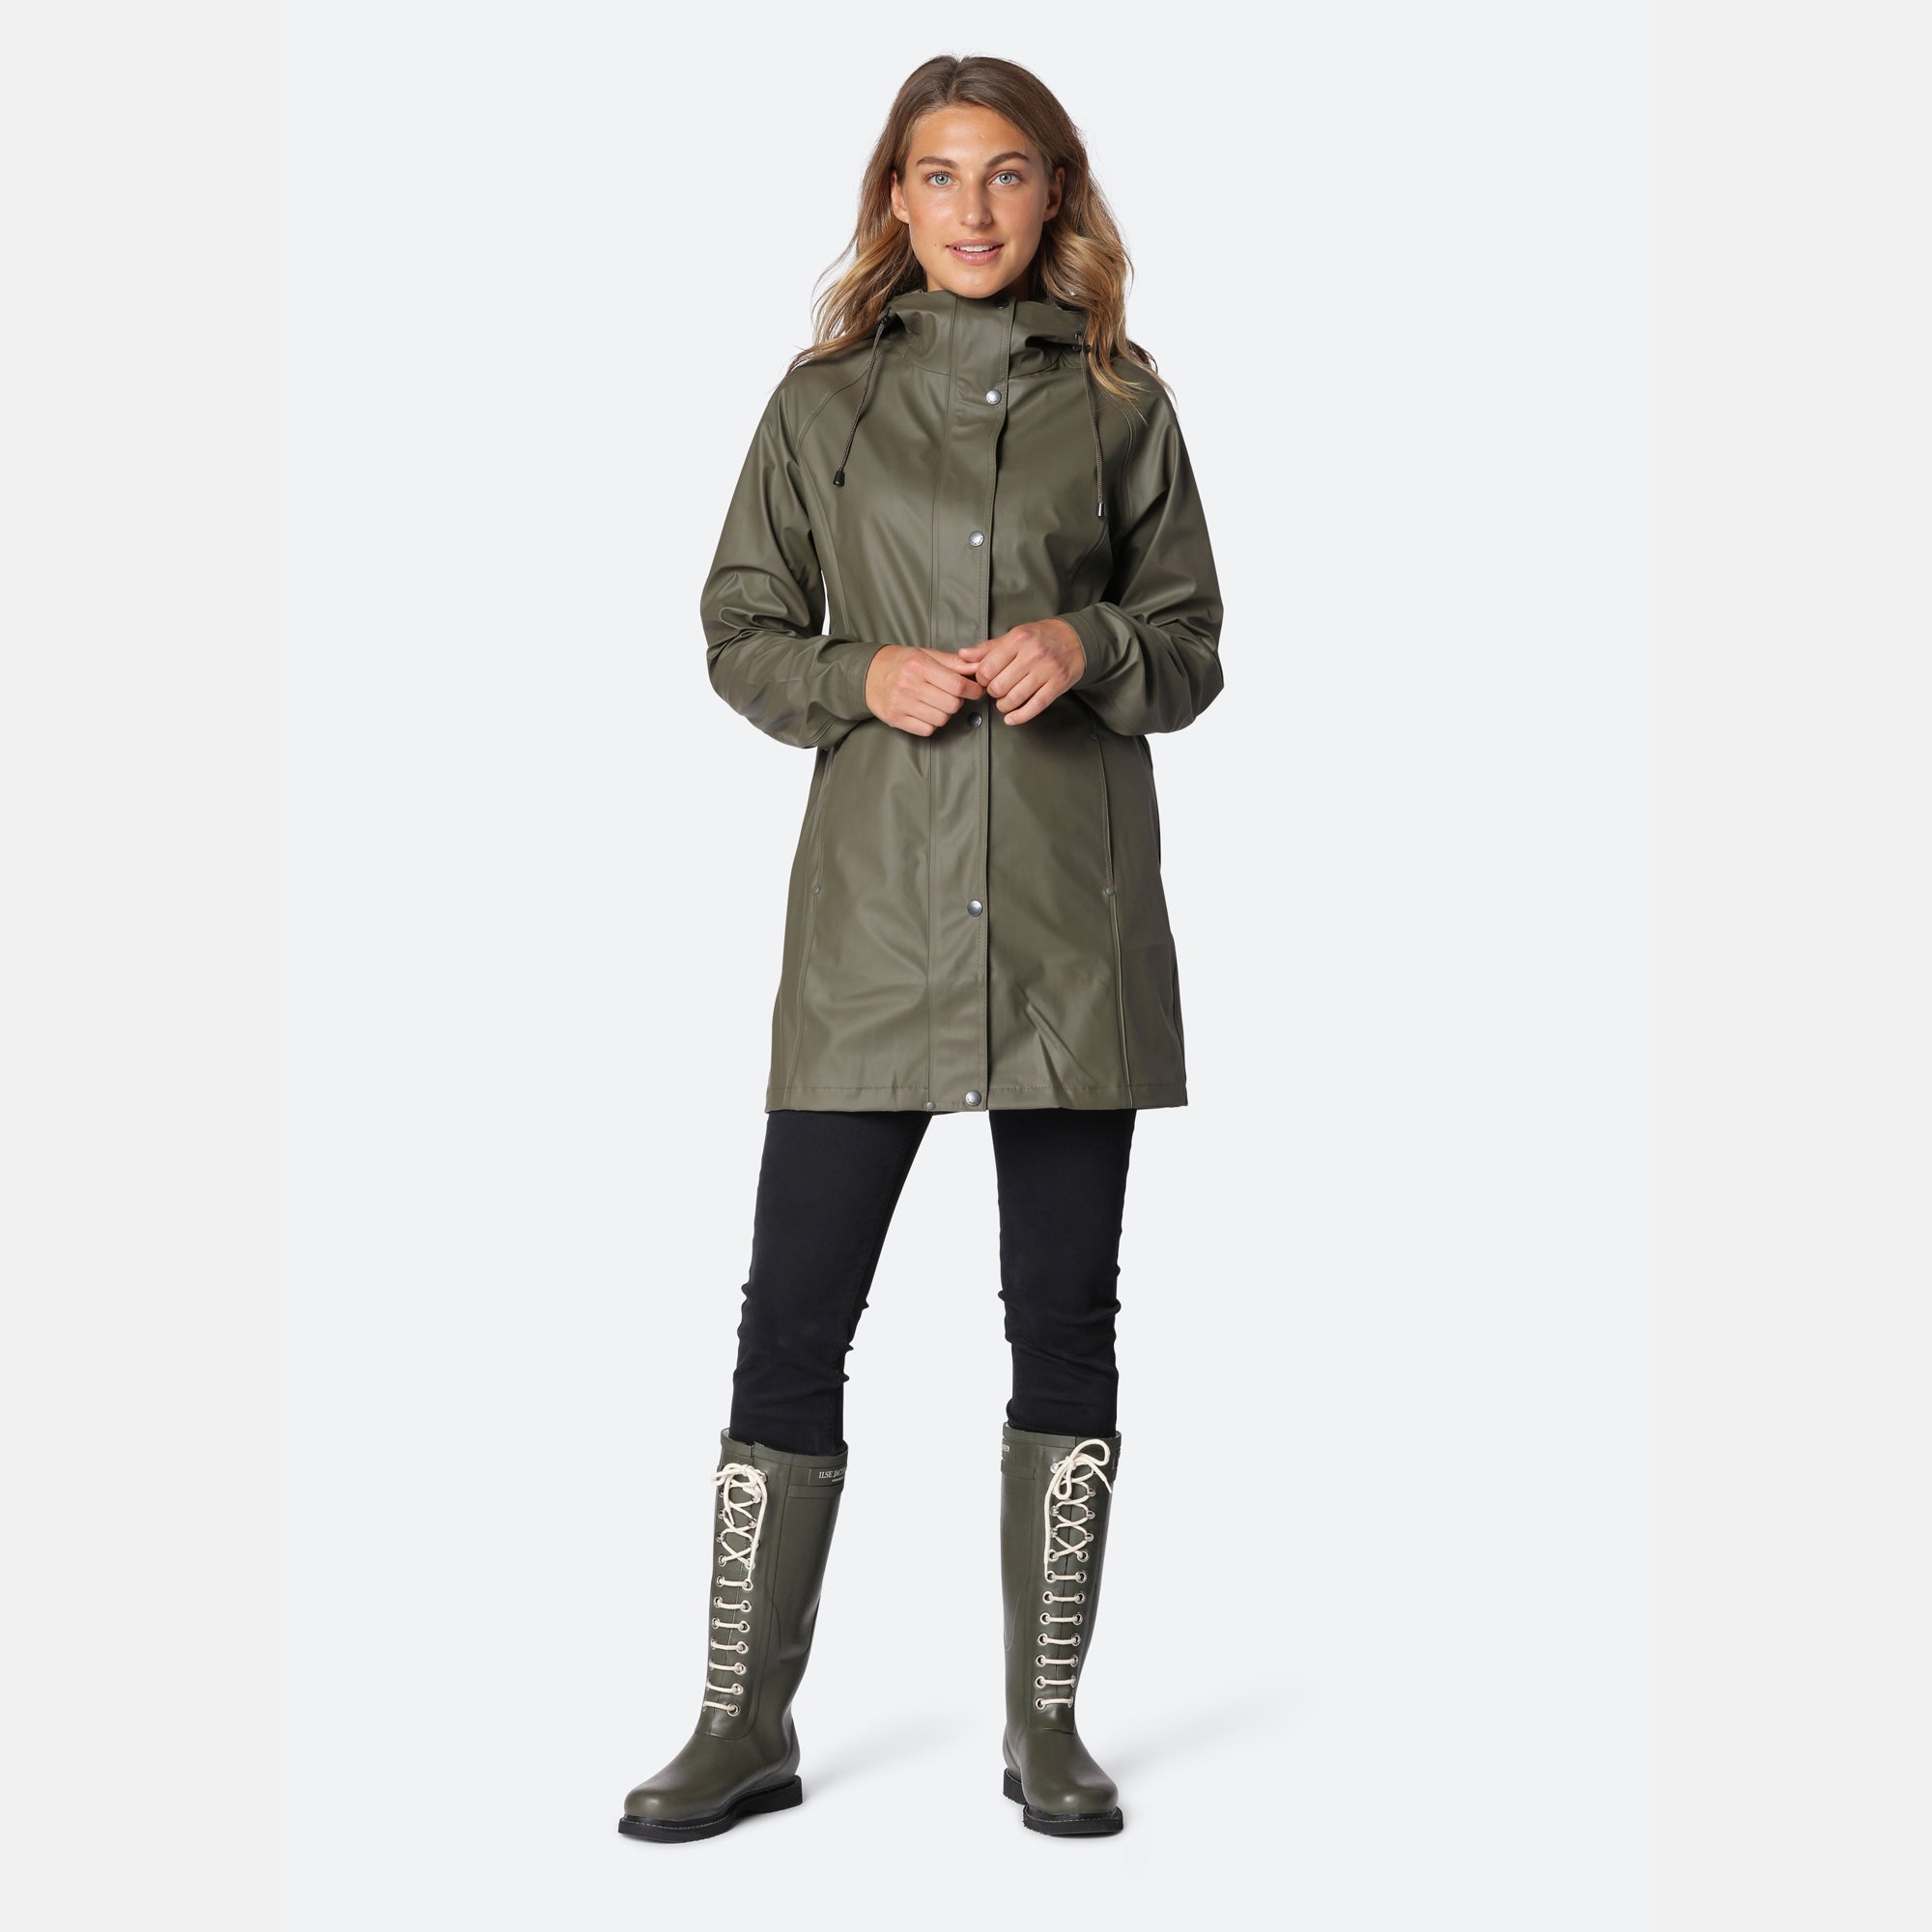 Raincoat RAIN87 - 410 Army | Army